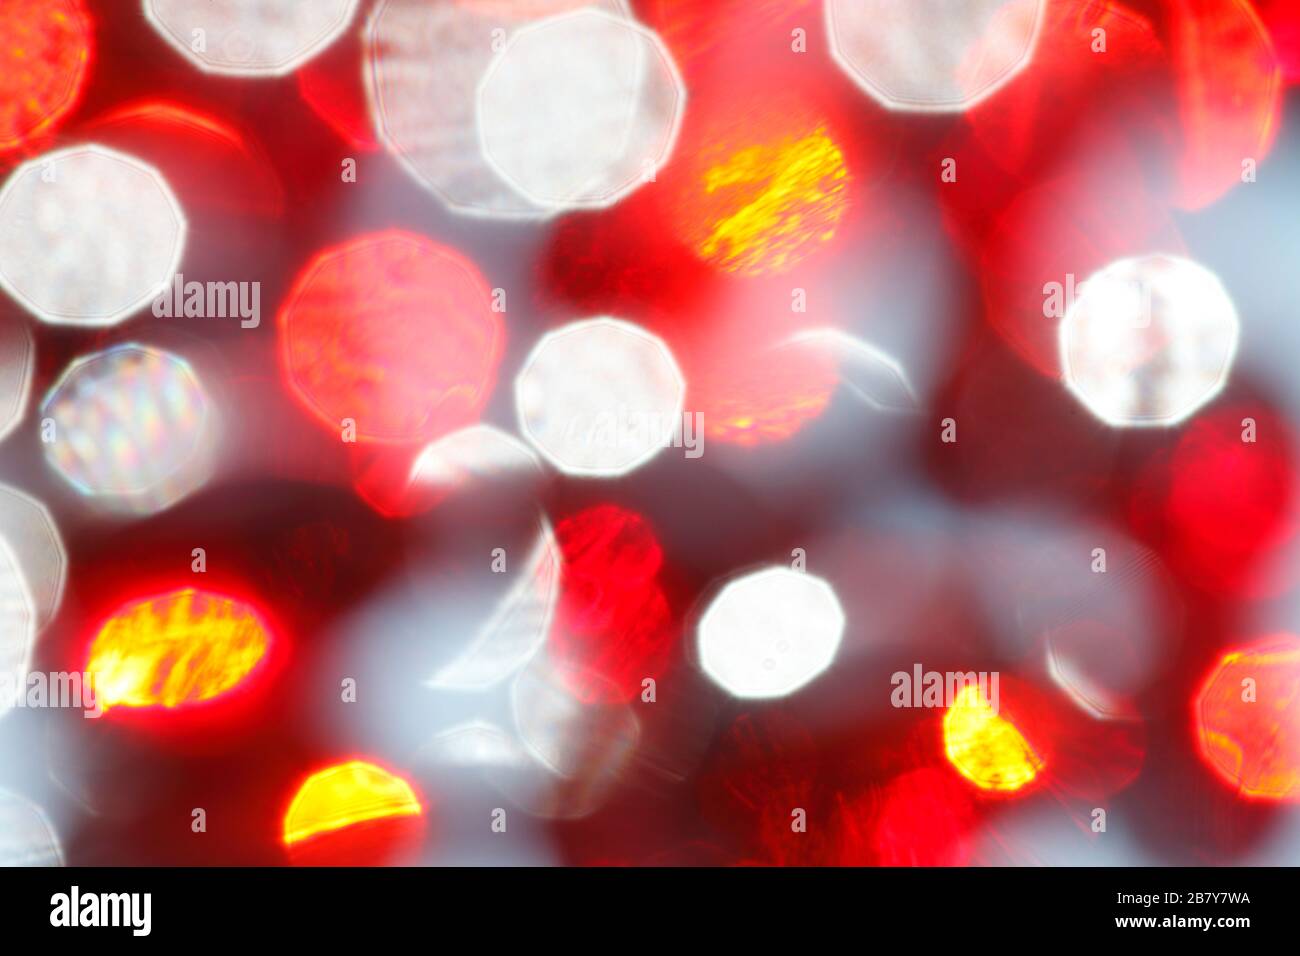 L'intricato disegno bianco rosso di luce e ombra prodotto dalle capsule disoccluse dell'olio di krill Foto Stock